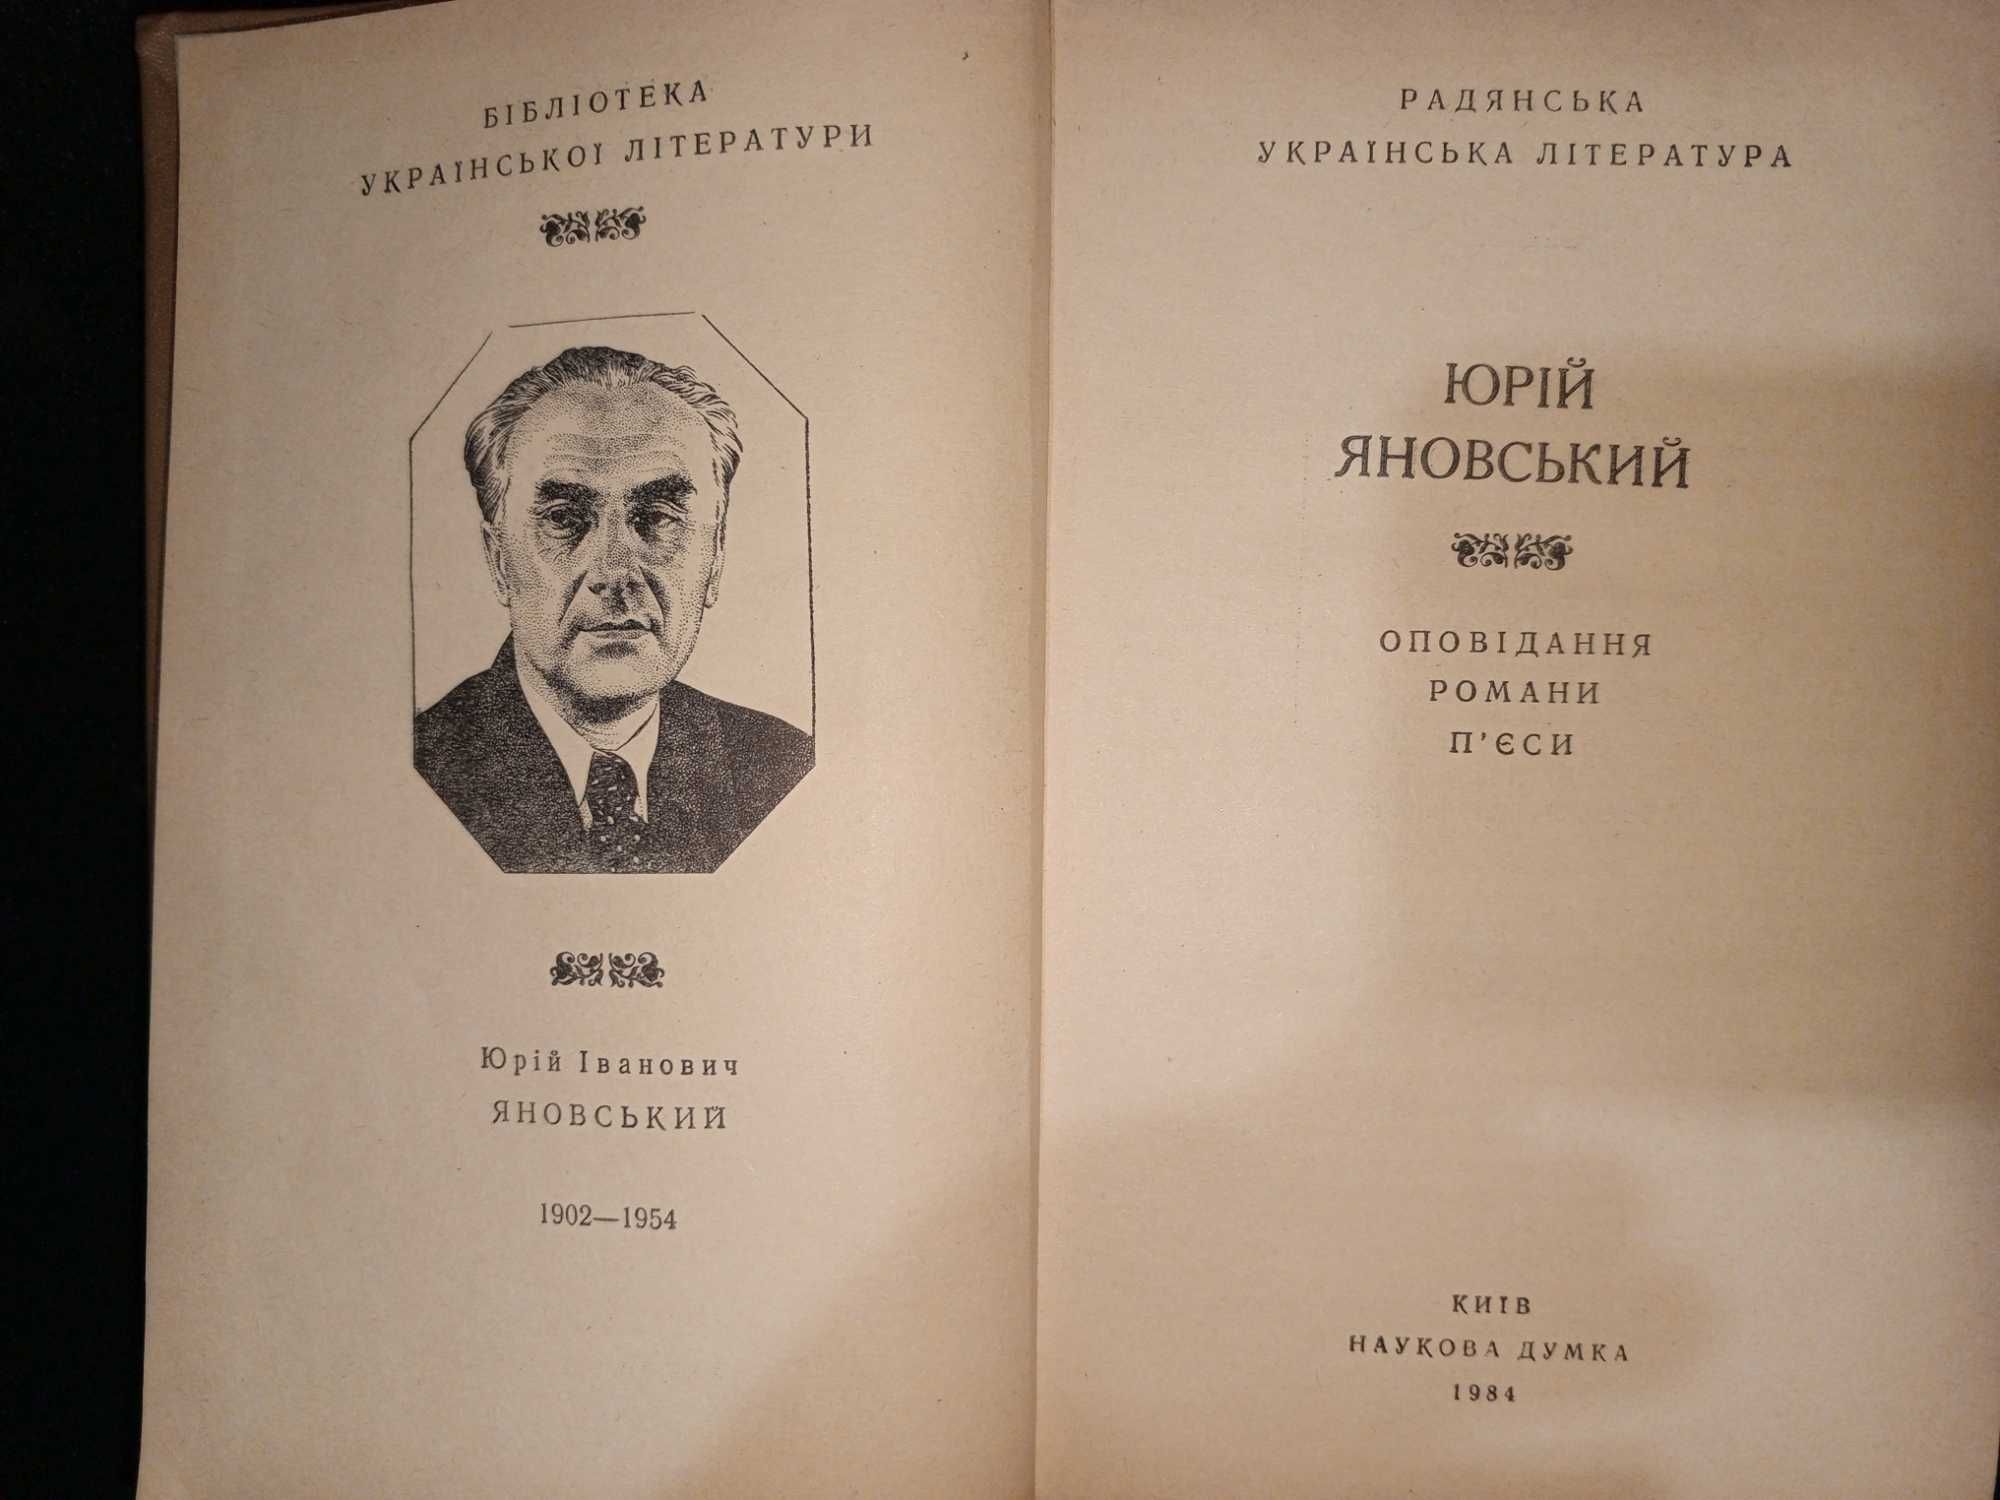 Книга 1984 г. ЮРИЙ ЯНОВСКИЙ (УКР.) Рассказы, Романы, Пьесы.